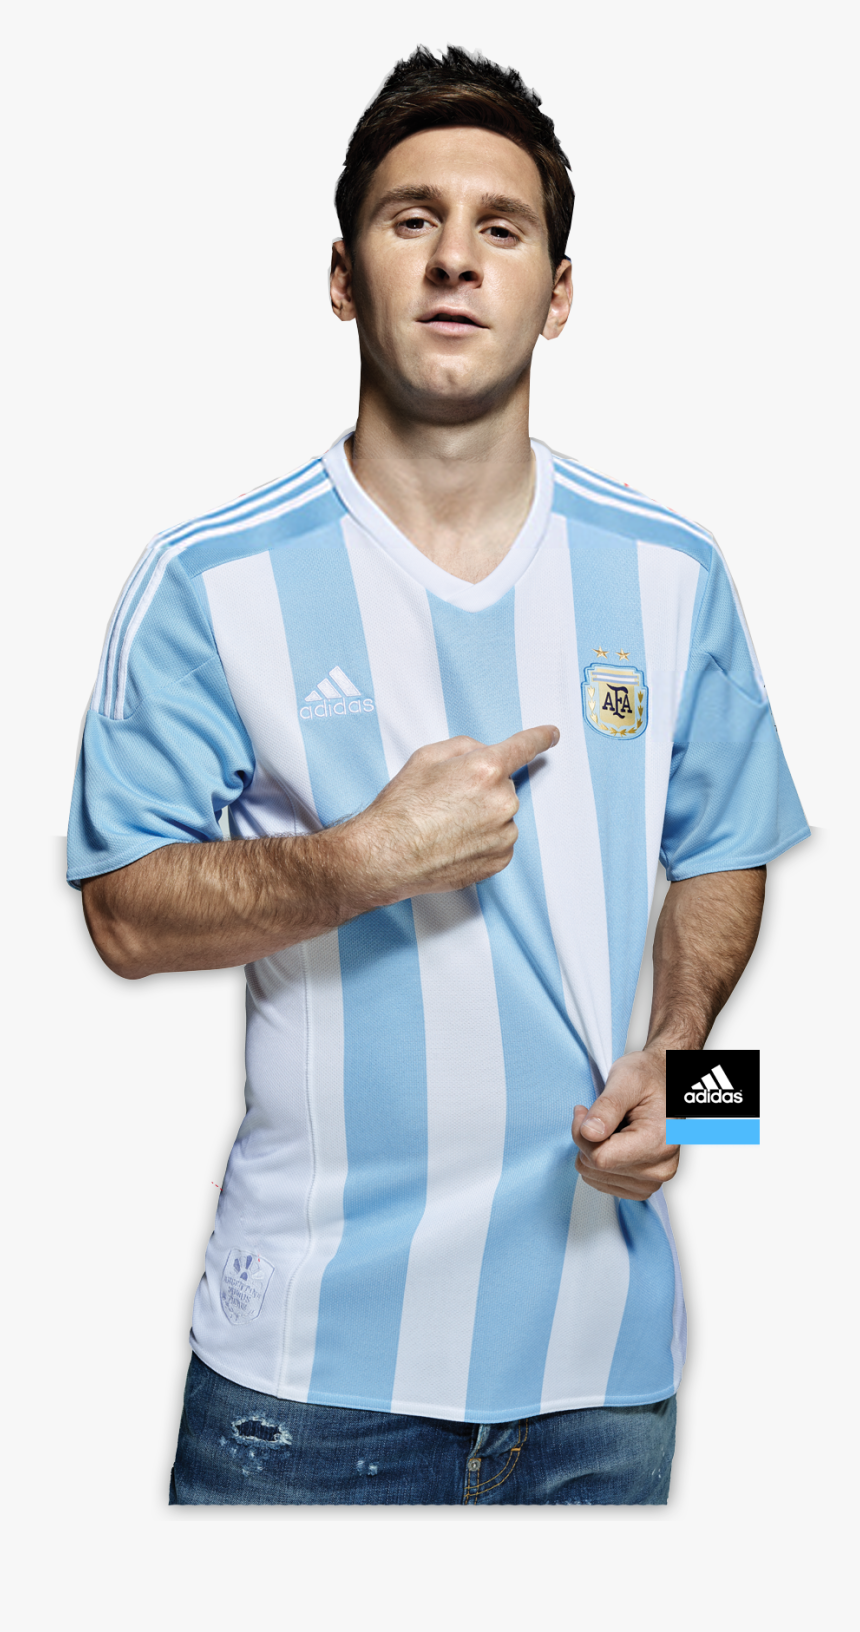 Camiseta De La Argentina Copa América 2019, HD Png Download, Free Download